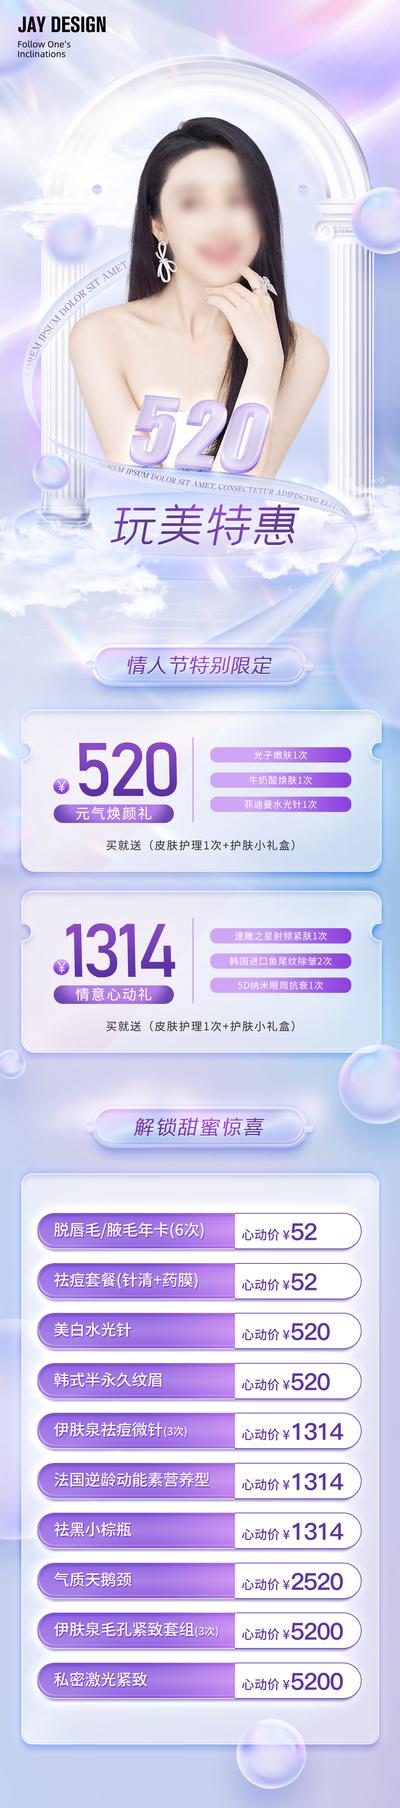 南门网 广告 医美 活动 人物 促销 520 情人节 渐变 玻璃质感 告白 特惠 唯美 心动 惊喜 紫色